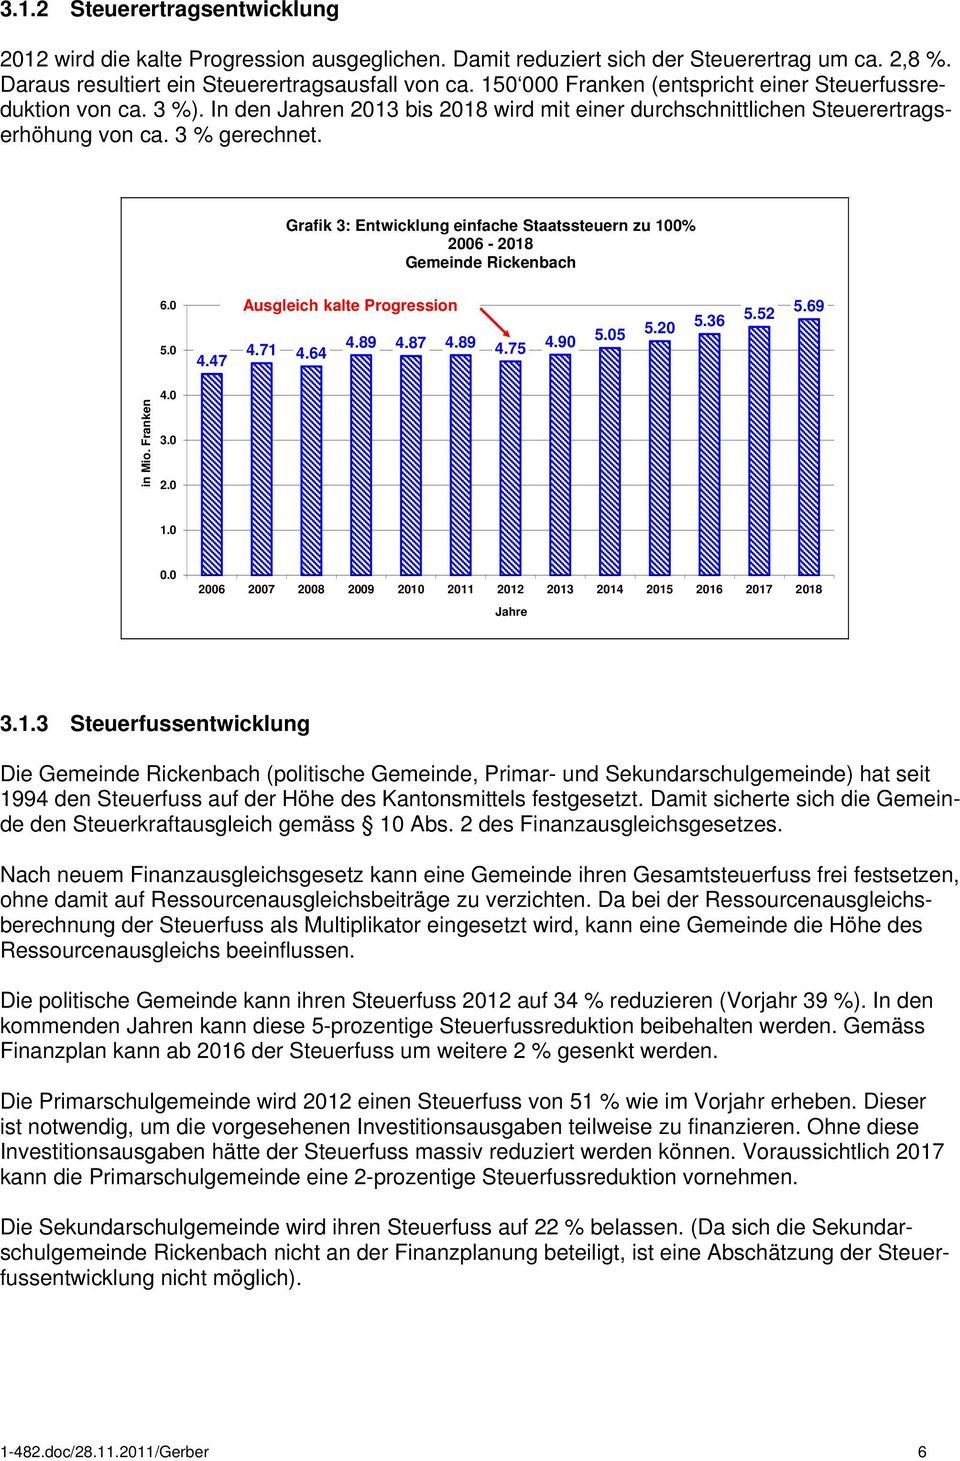 Grafik 3: Entwicklung einfache Staatssteuern zu 100% Gemeinde Rickenbach 6.0 5.0 4.47 Ausgleich kalte Progression 4.71 4.64 4.89 4.87 4.89 4.75 4.90 5.05 5.20 5.36 5.52 5.69 in Mio. Franken 4.0 3.0 2.